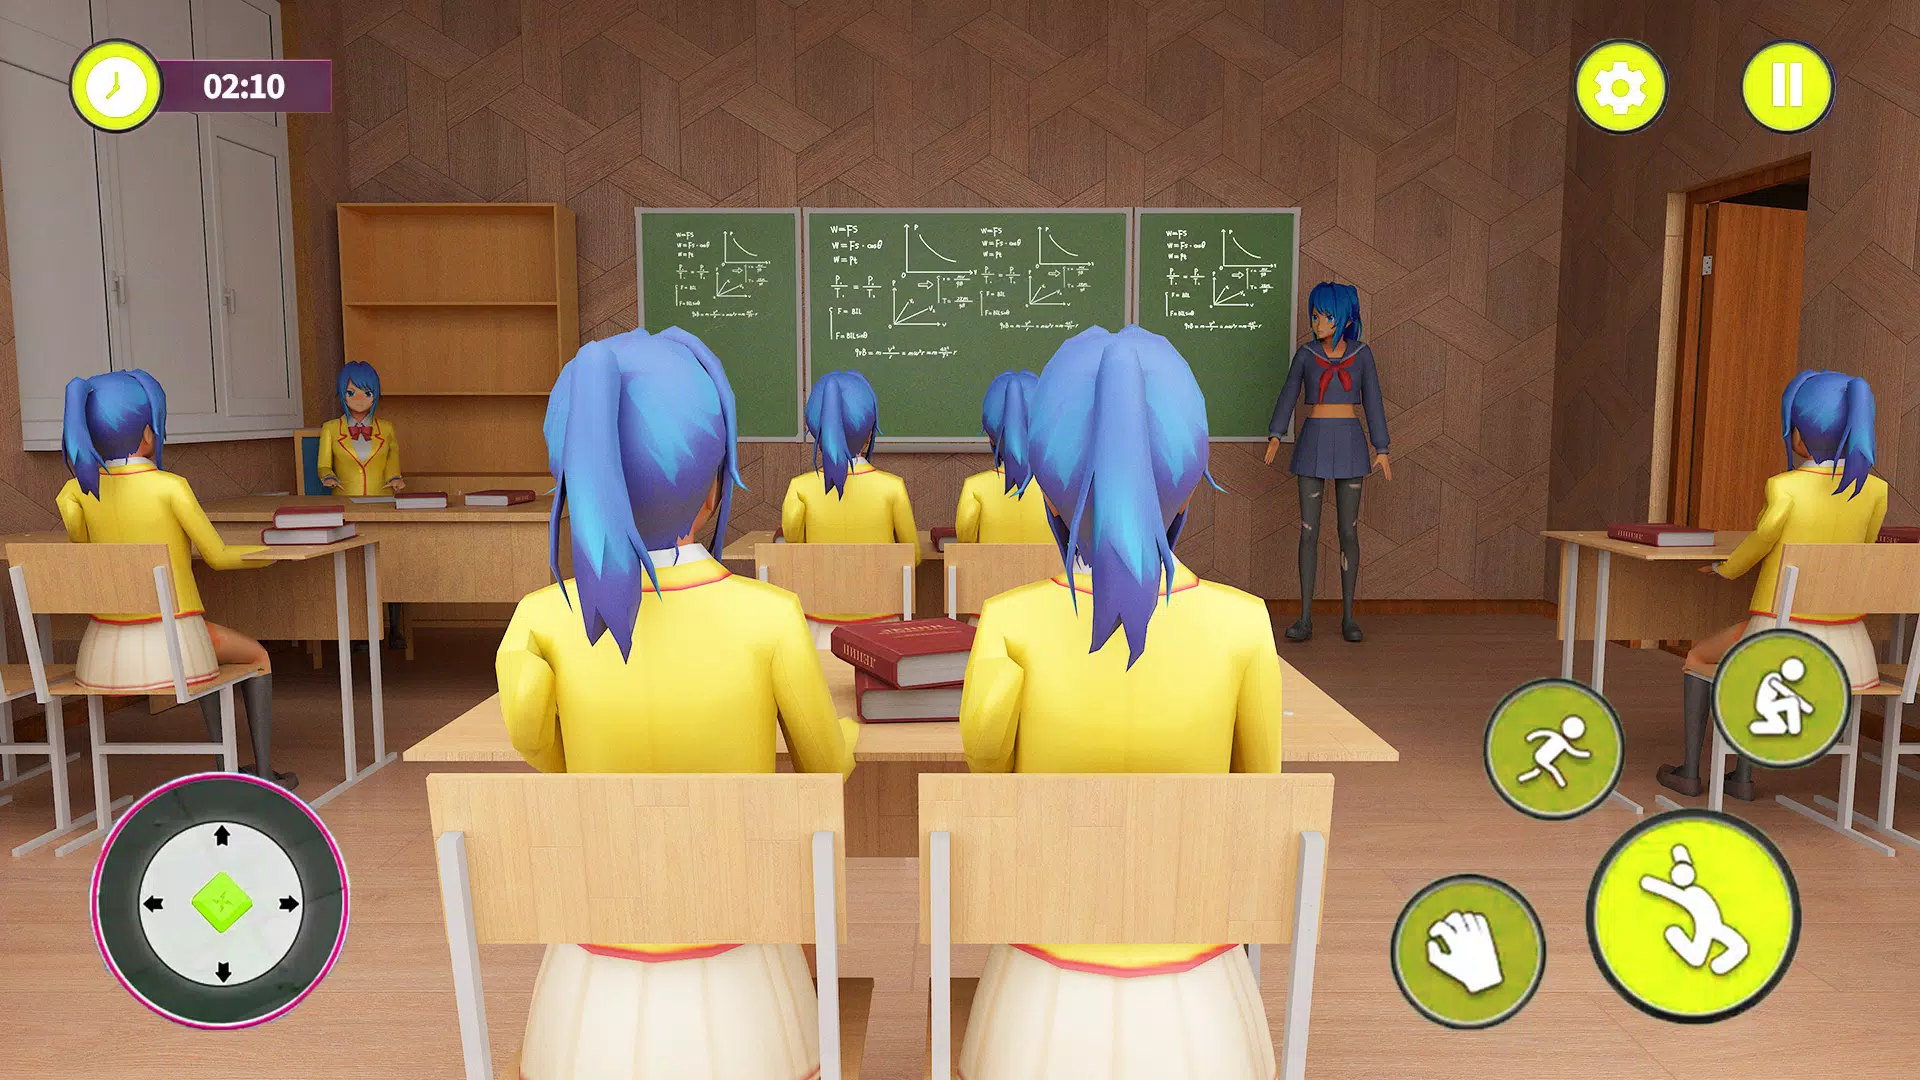 Download do APK de jogo de meninas do ensino médi para Android